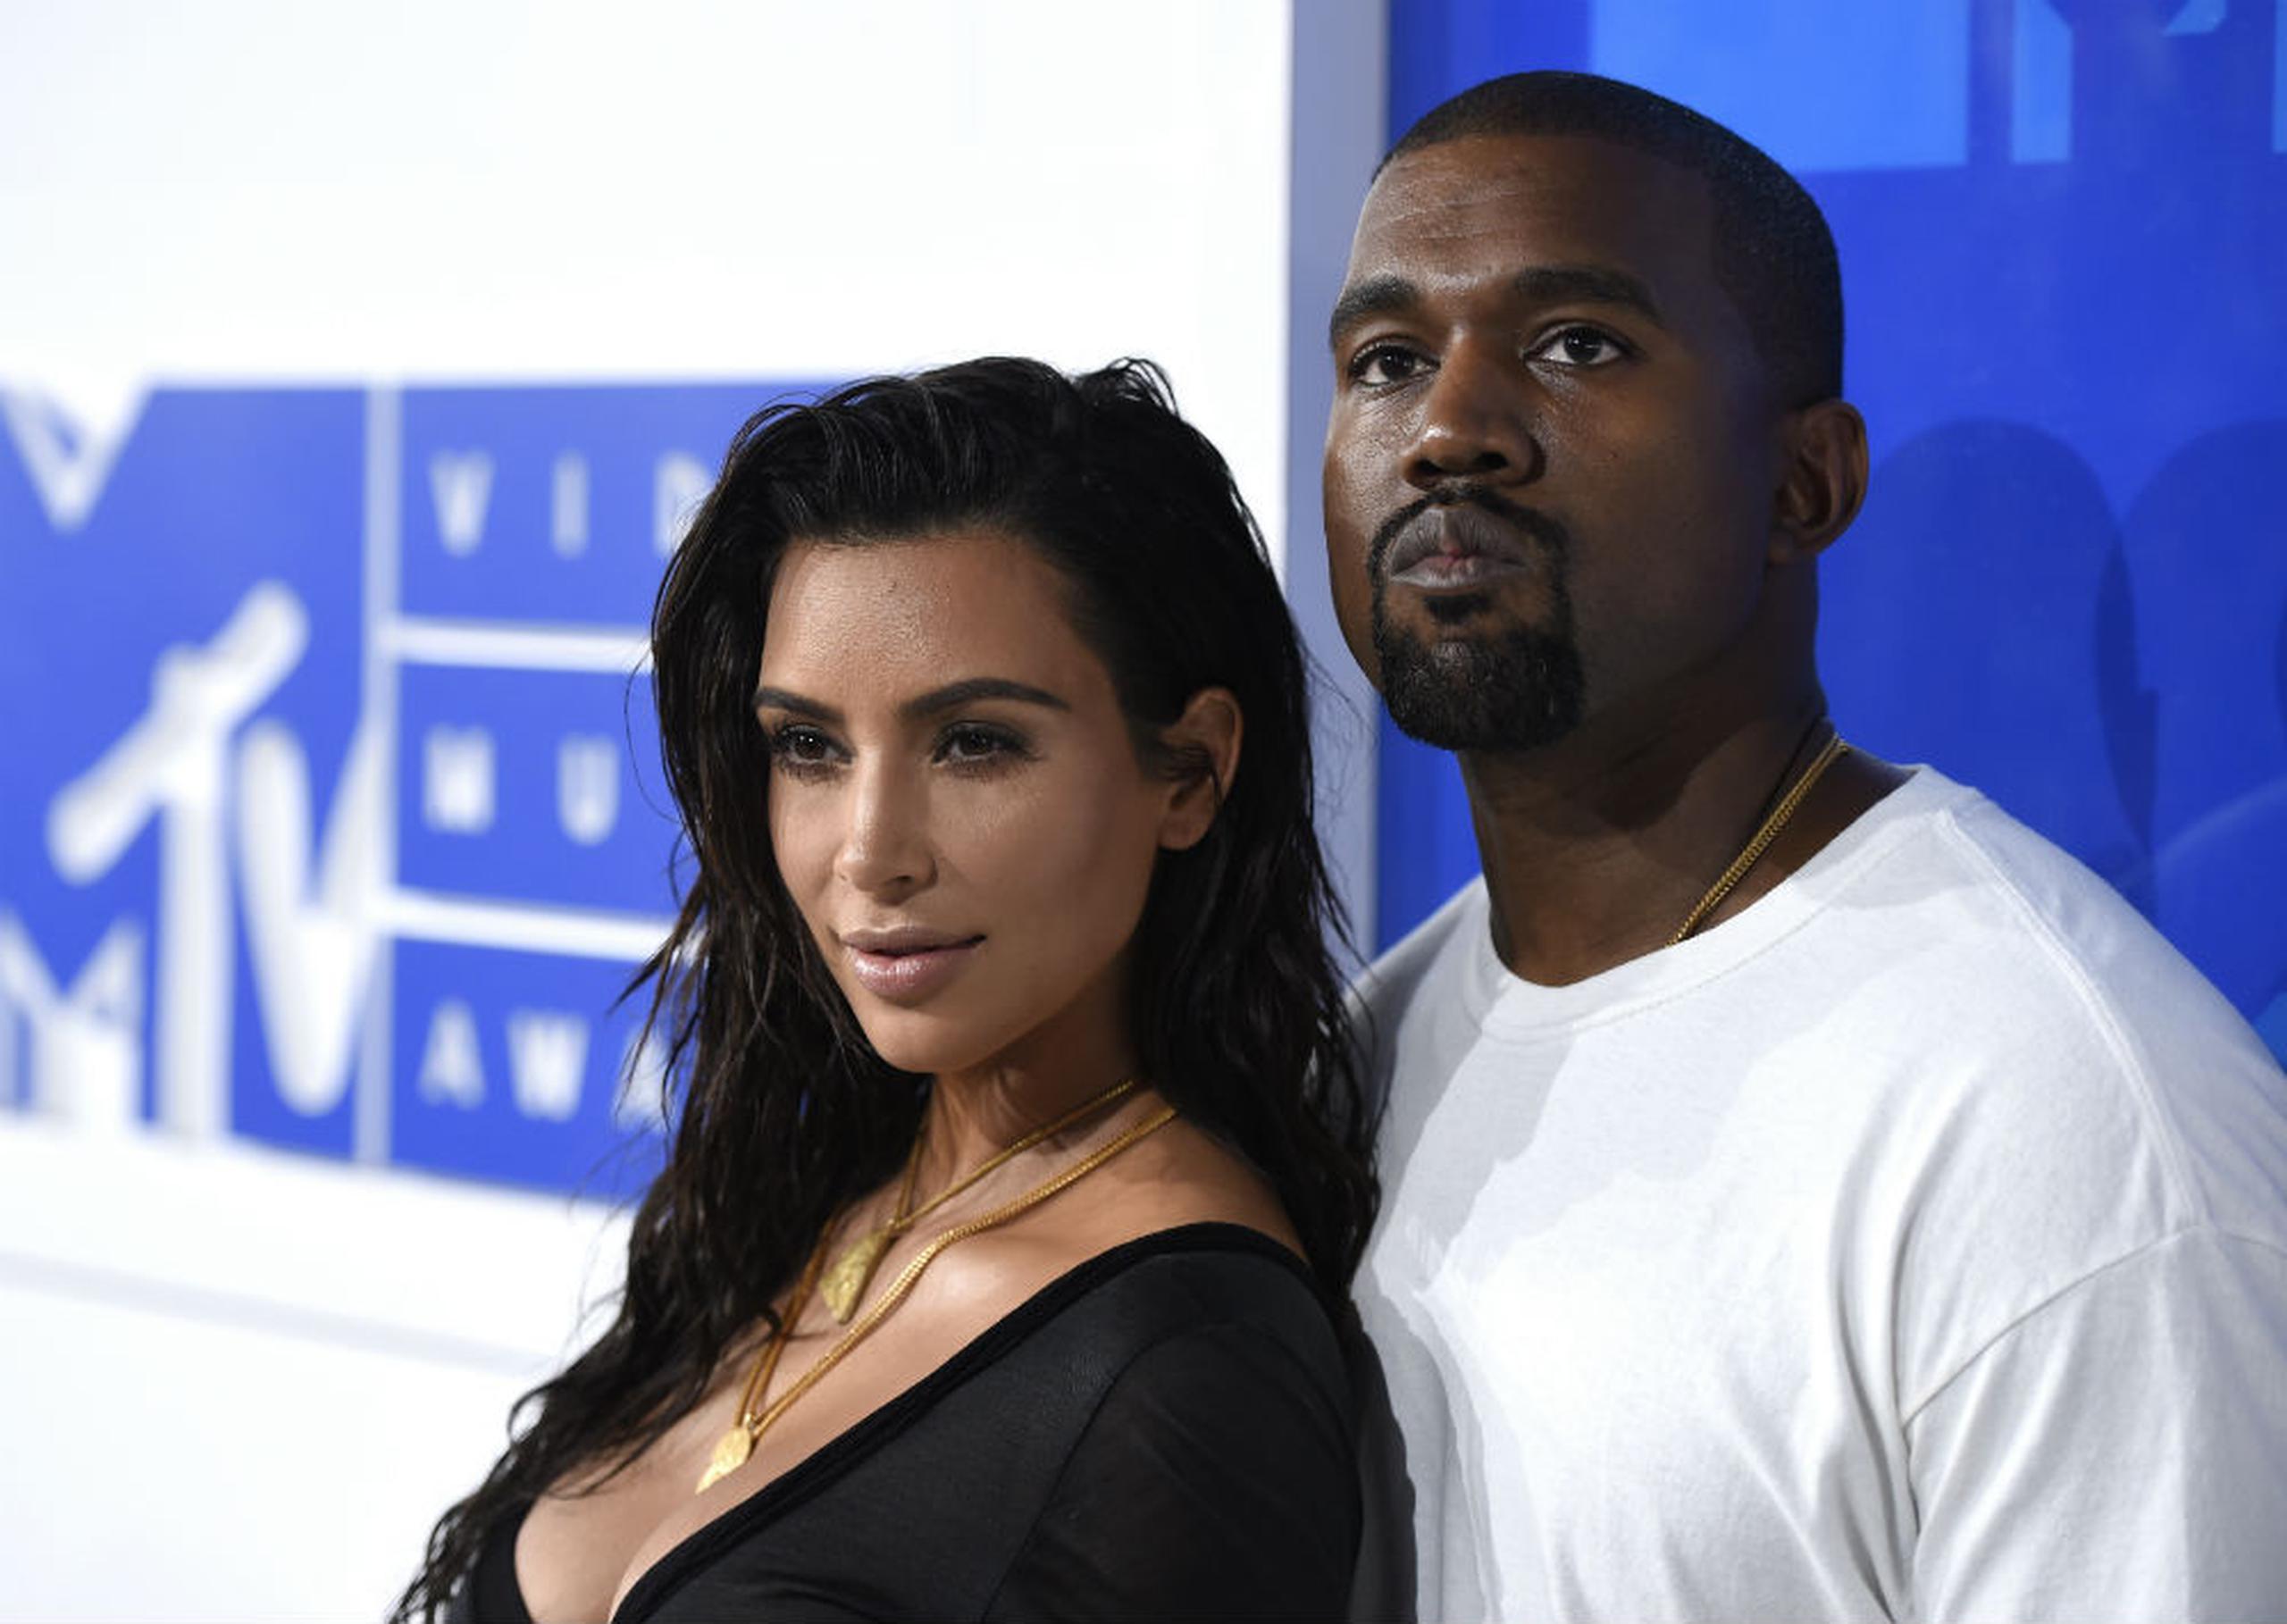 La estrella de la televisión Kim Kardashian recibió de parte de su actual esposo, el rapero Kanye West, un anillo de 15 quilates estimado en $3 millones, creado por Lorraine Schwartz. (Archivo)